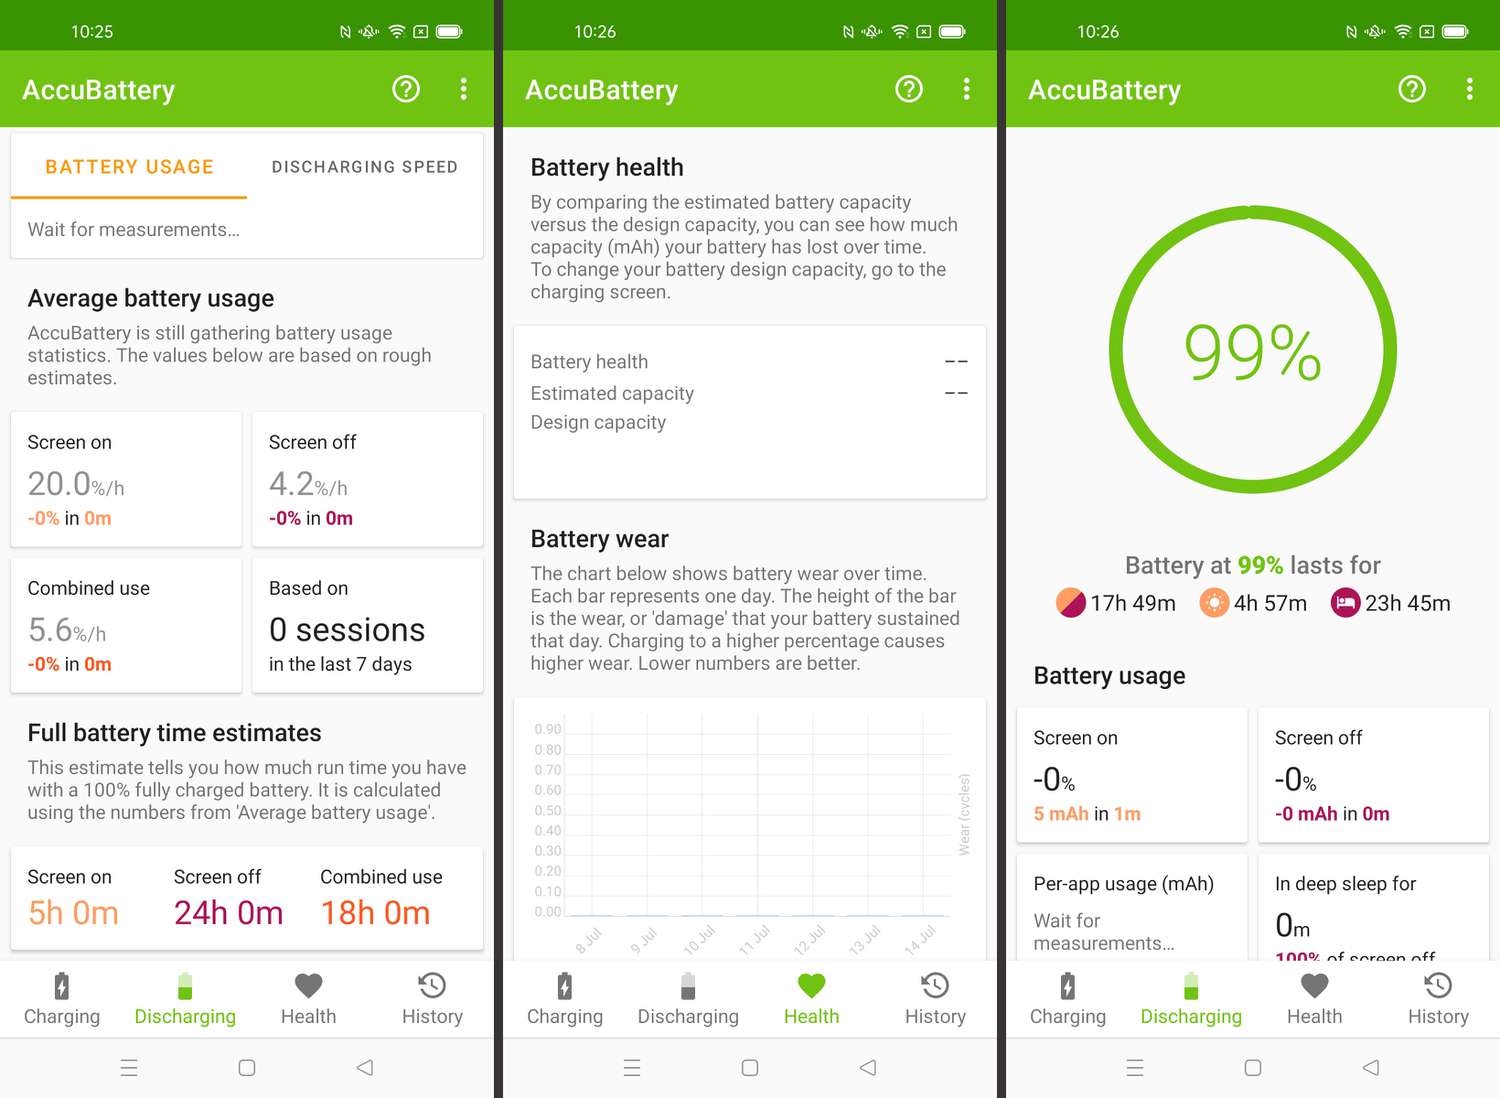 Kroky potřebné k zobrazení stavu baterie v systému Android prostřednictvím AccuBattery